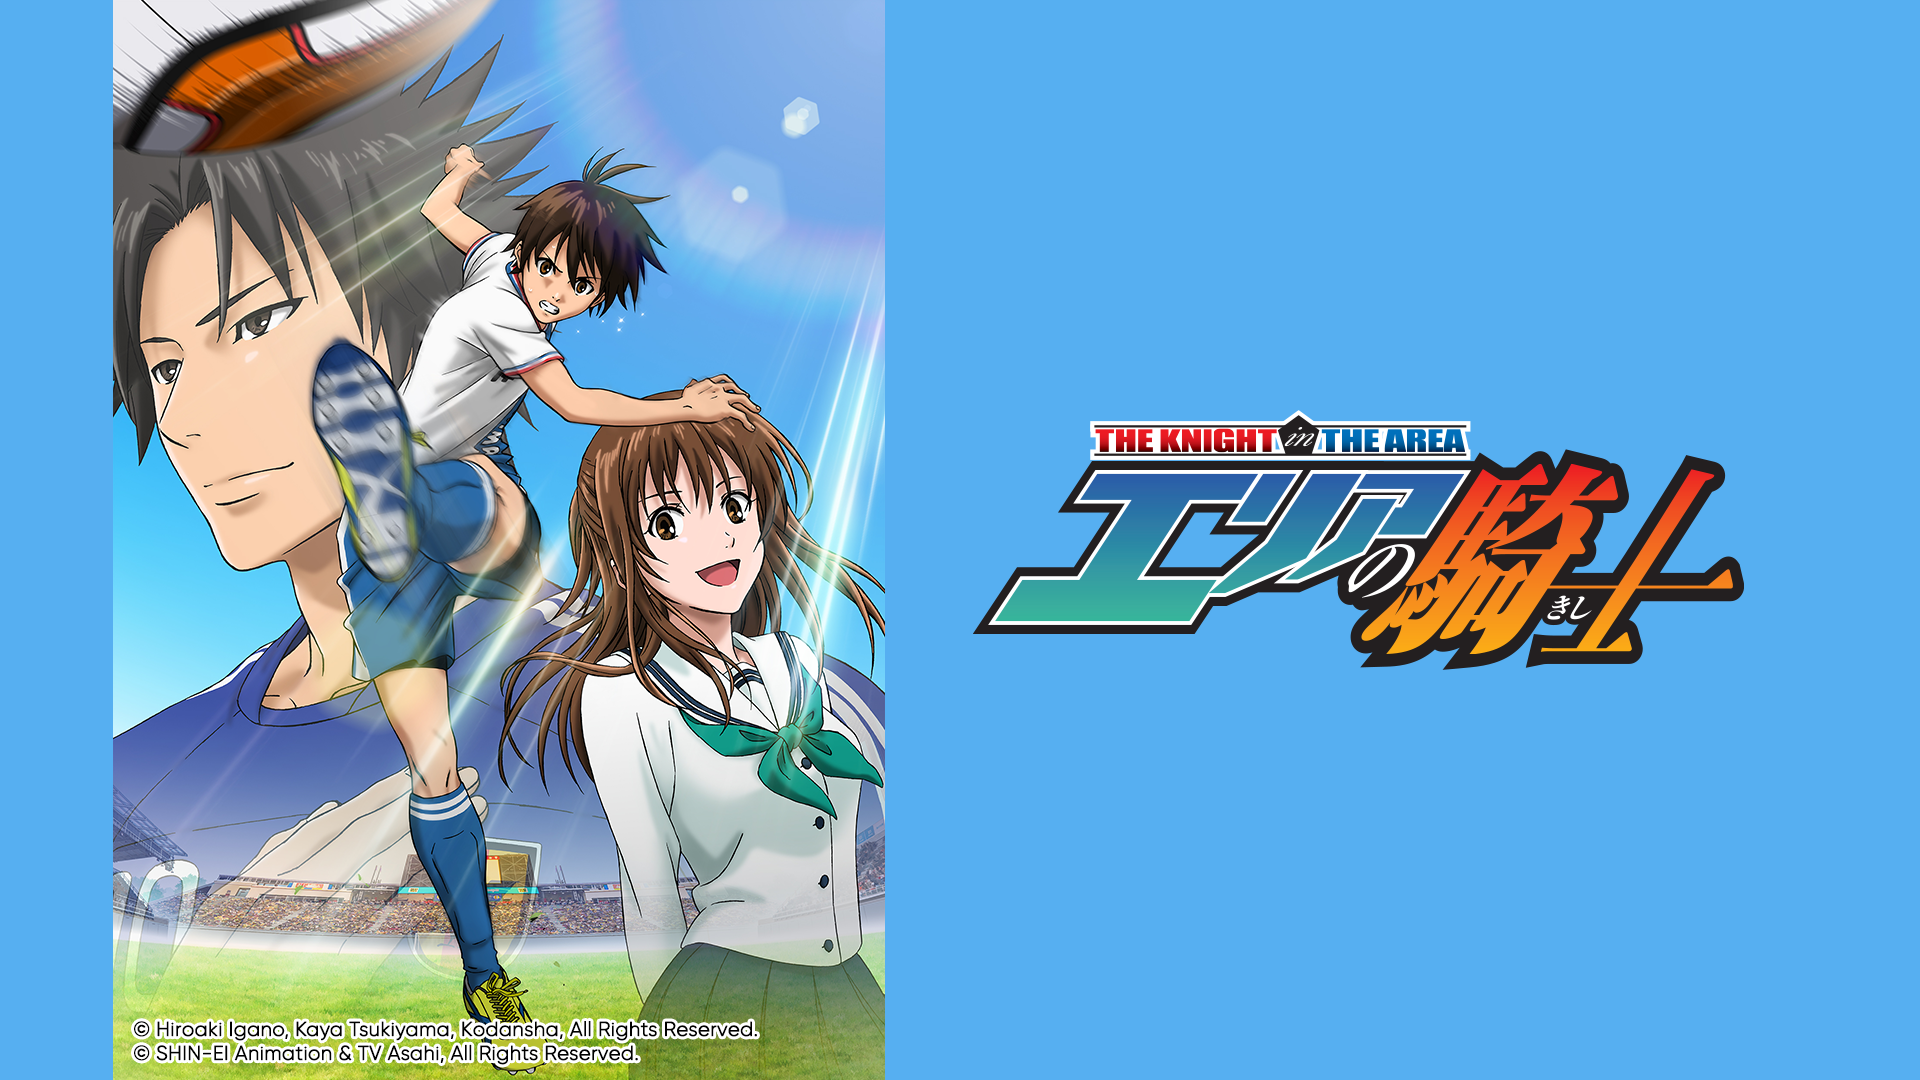 Anime : Area no kishi - I loved this anime! #anime #LiveForTheChalleng... |  TikTok